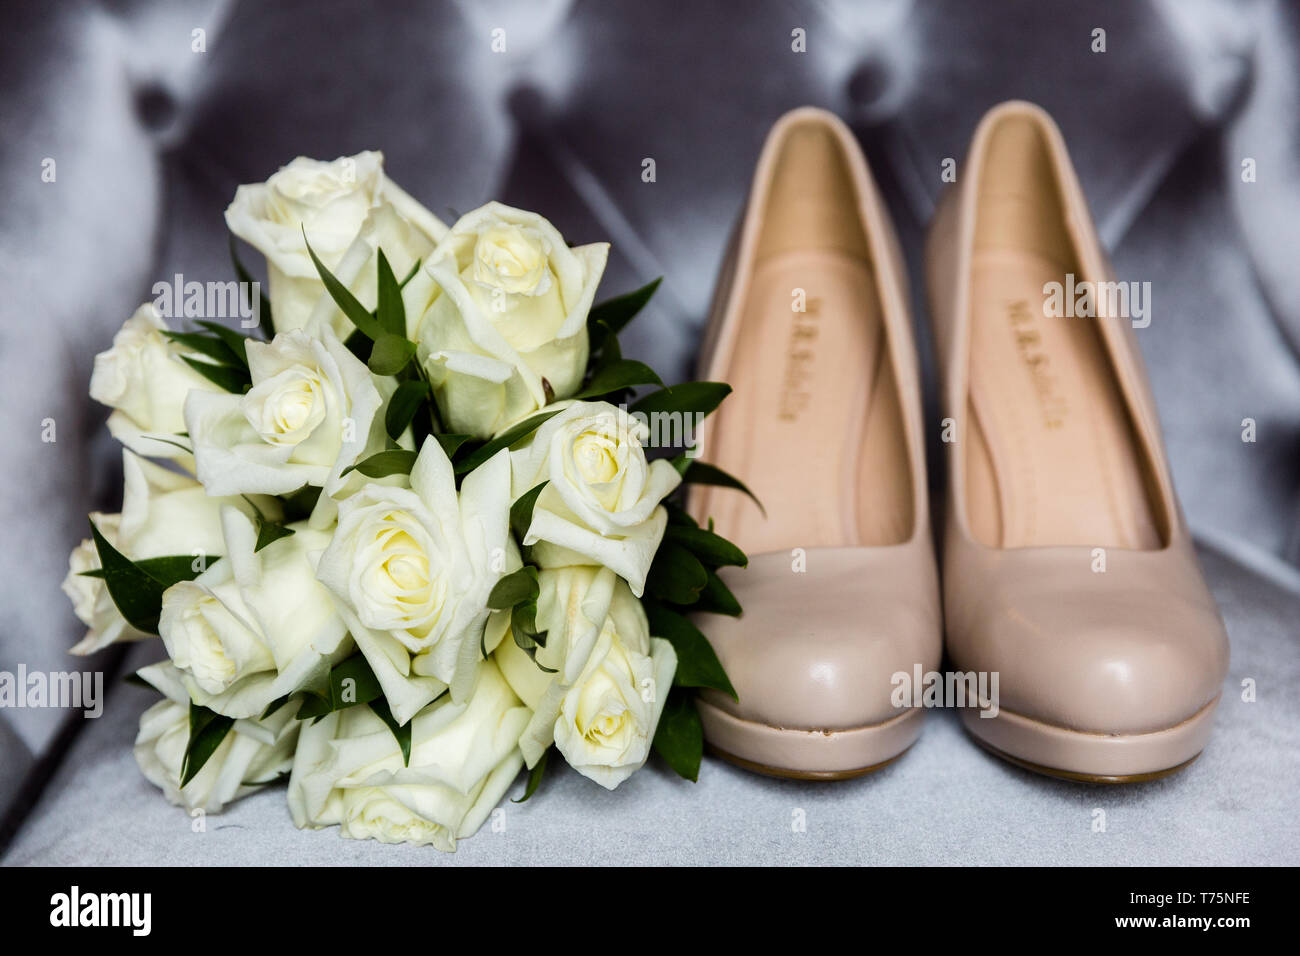 Bouquet de roses blanches à côté de l'épouse hautes chaussures de talon Banque D'Images